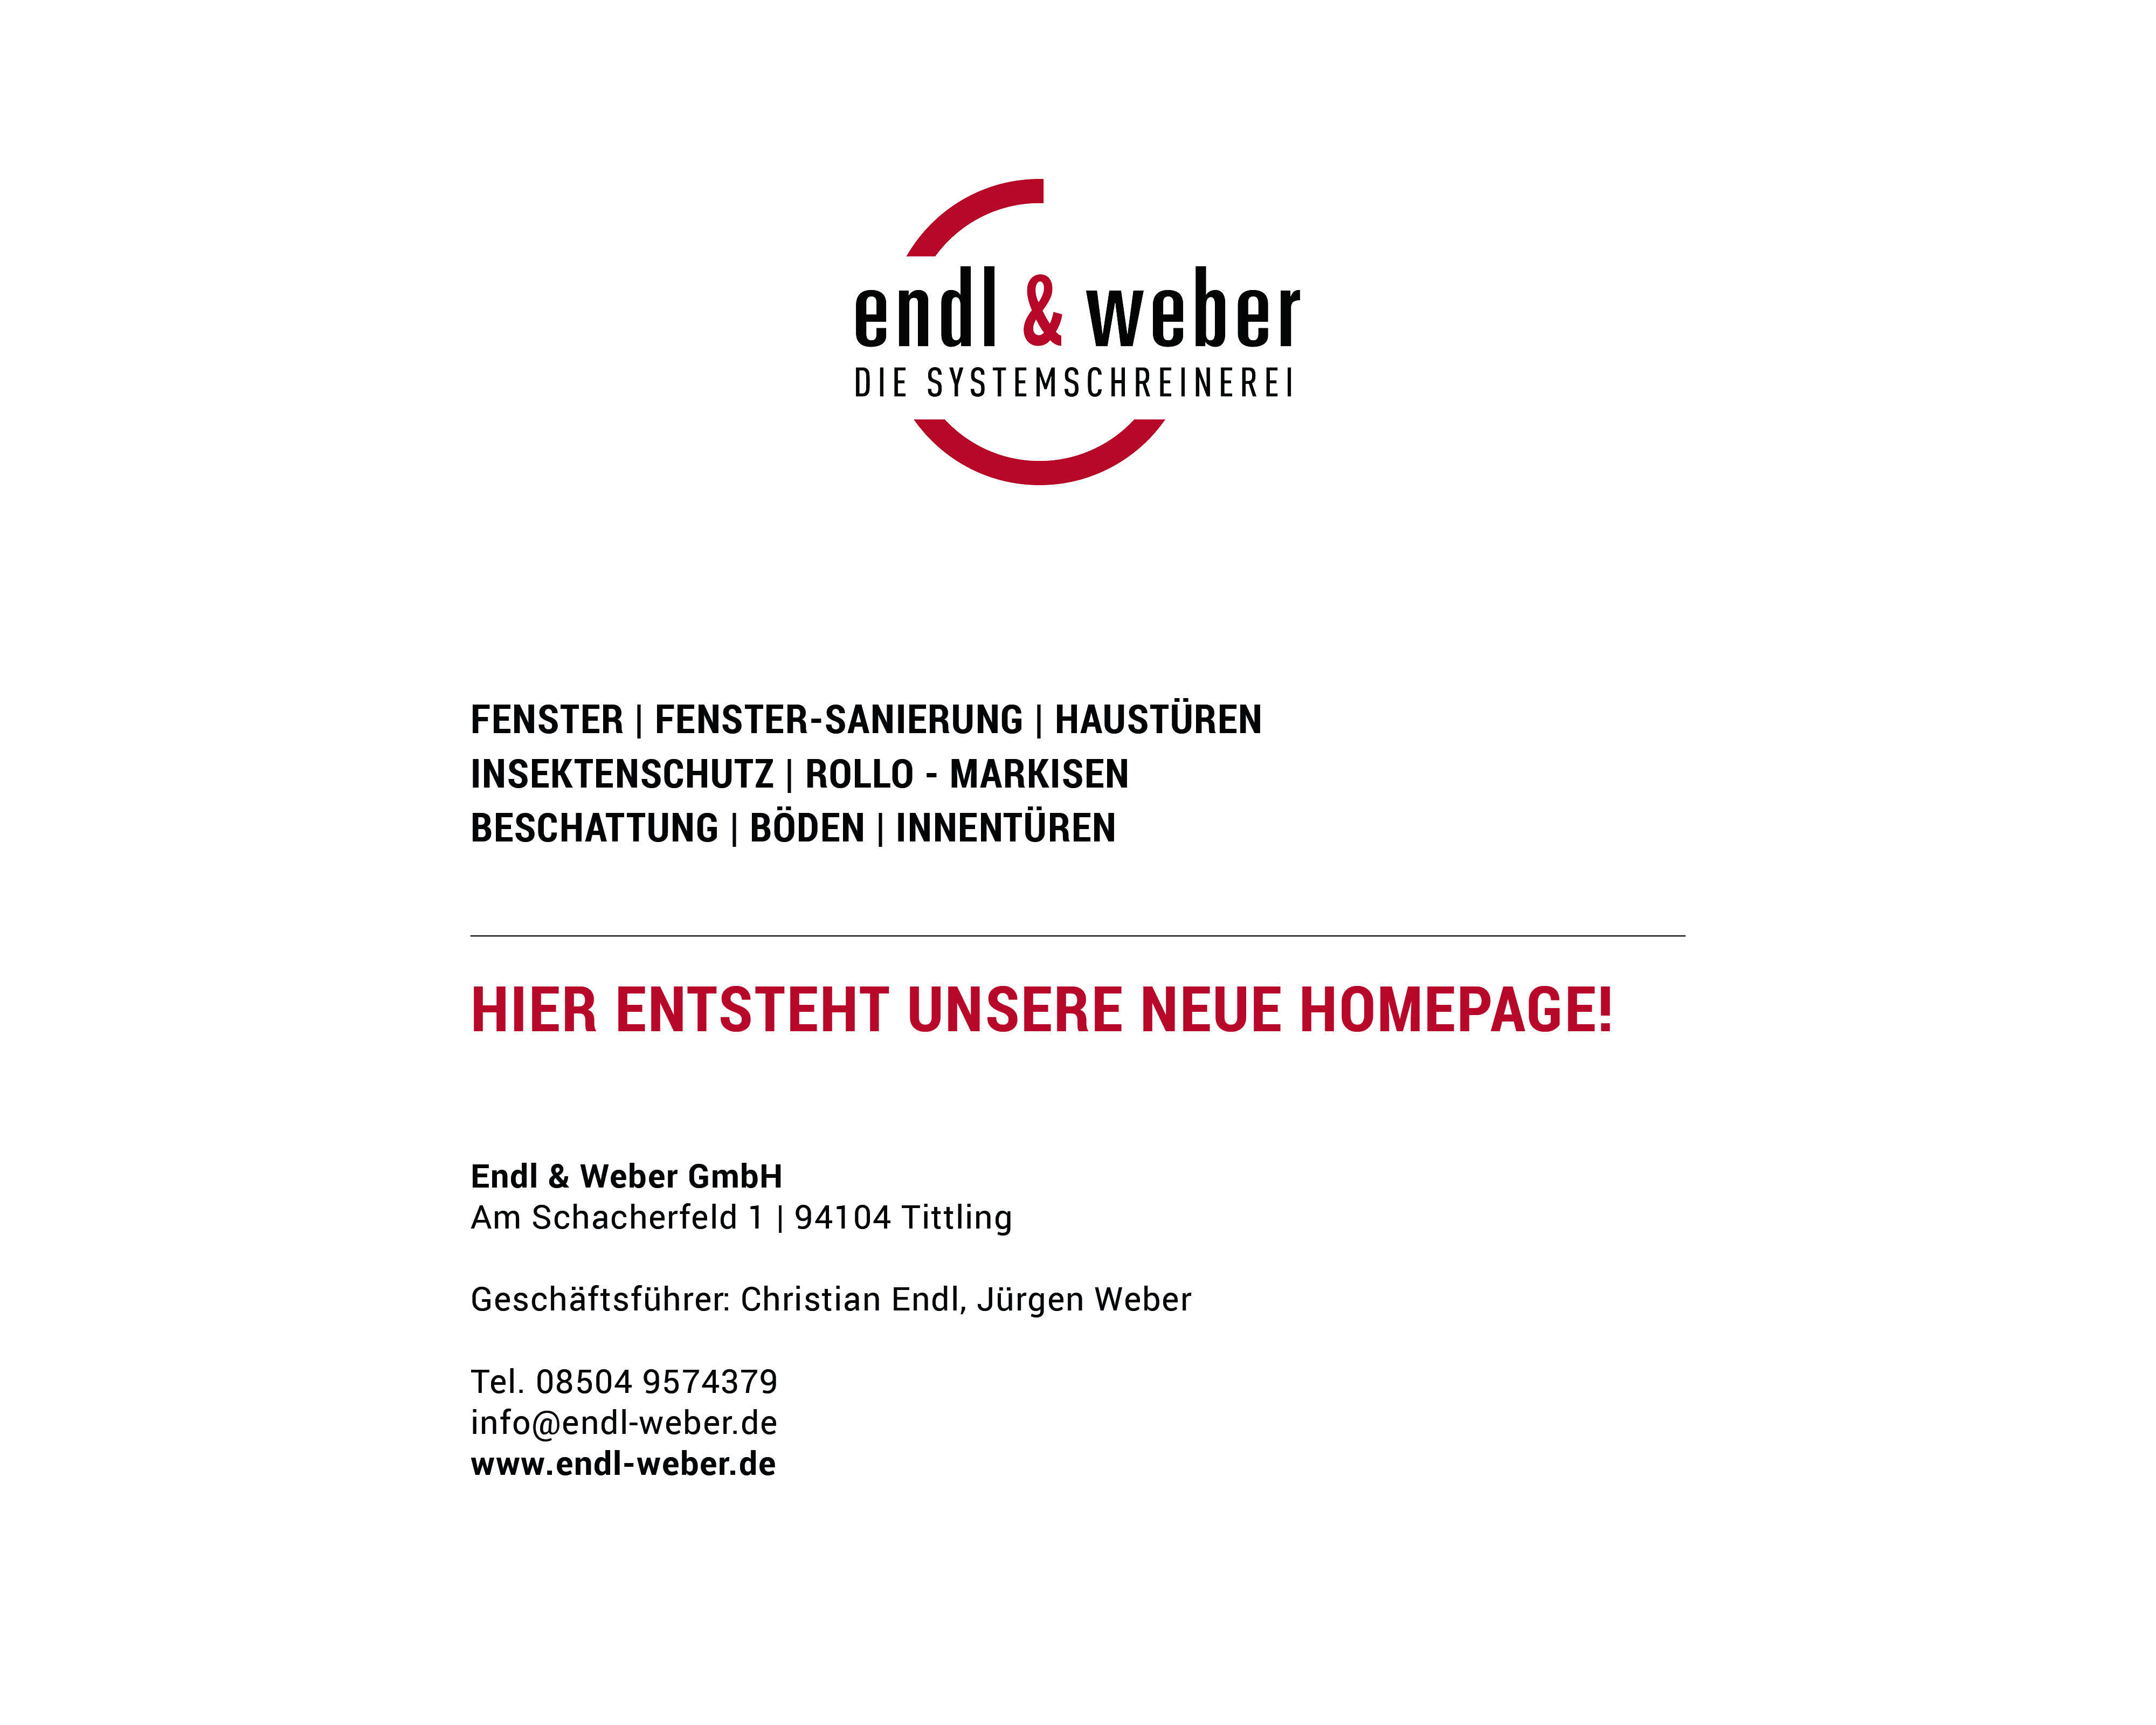 Endl & Weber GmbH - Systemschreinerei